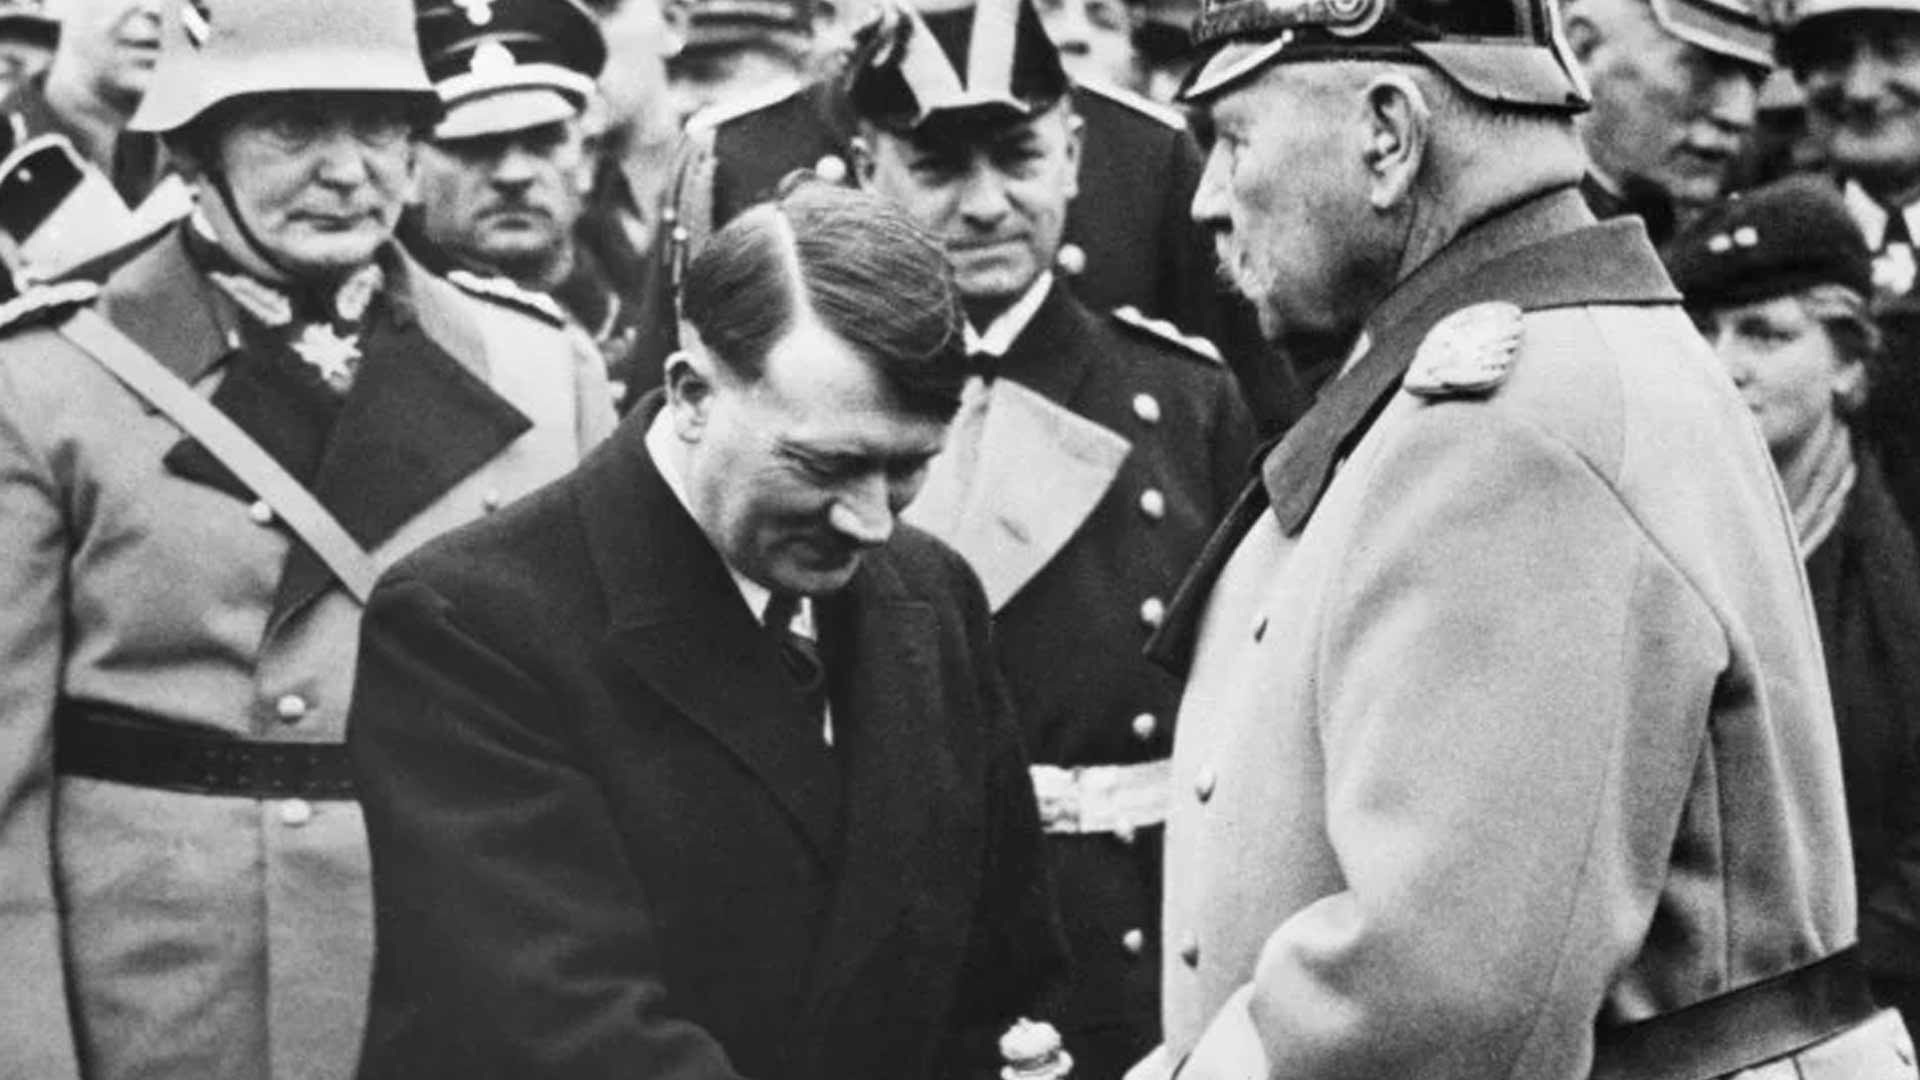 Adolf Hitler becomes Reich Chancellor